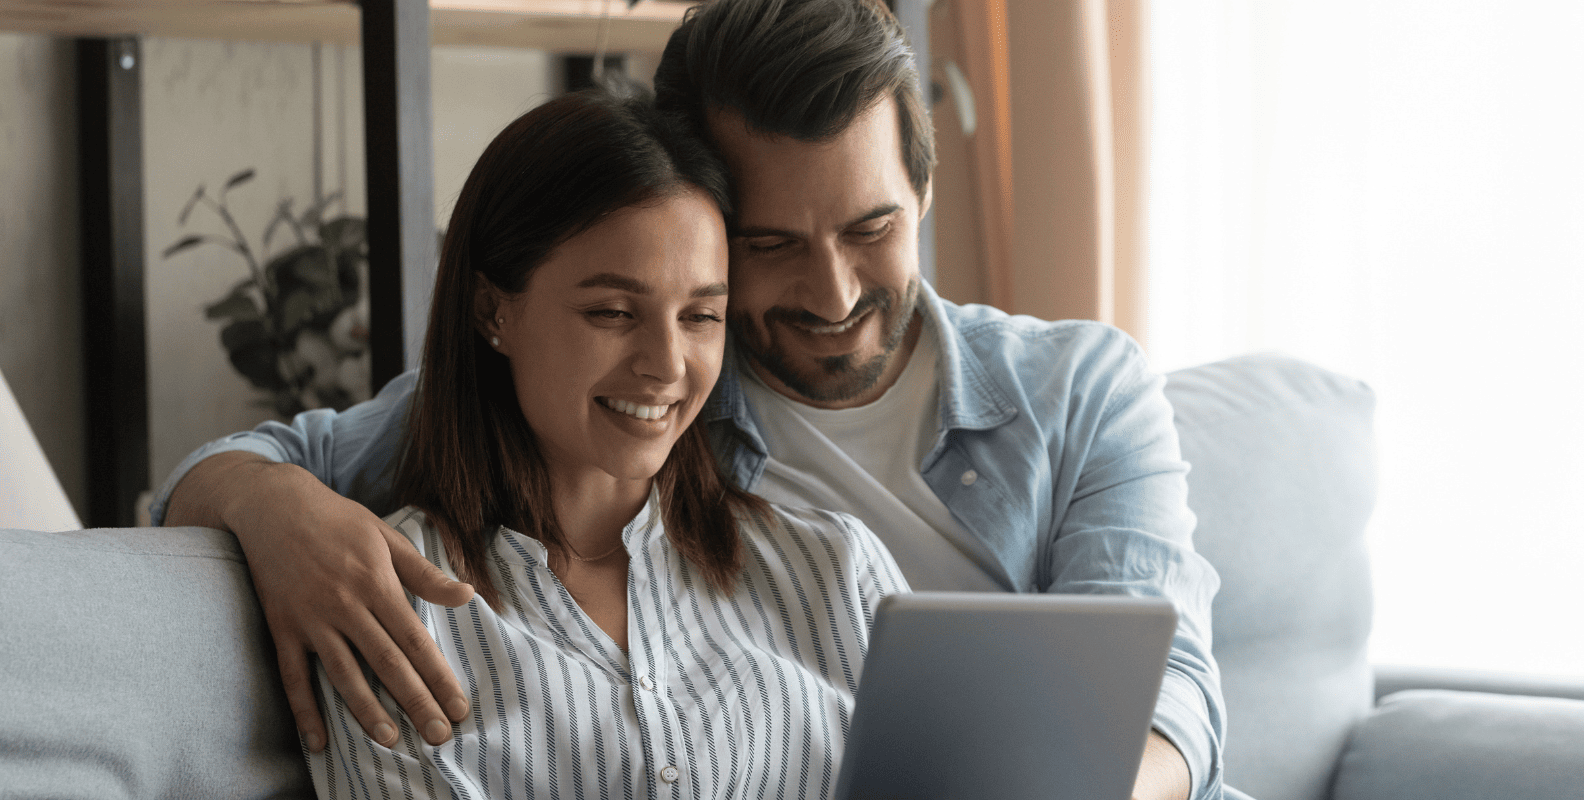 גבר ואישה מסתכלים על מחשב נייד. להתגרש נכון  להתגרש נכון 